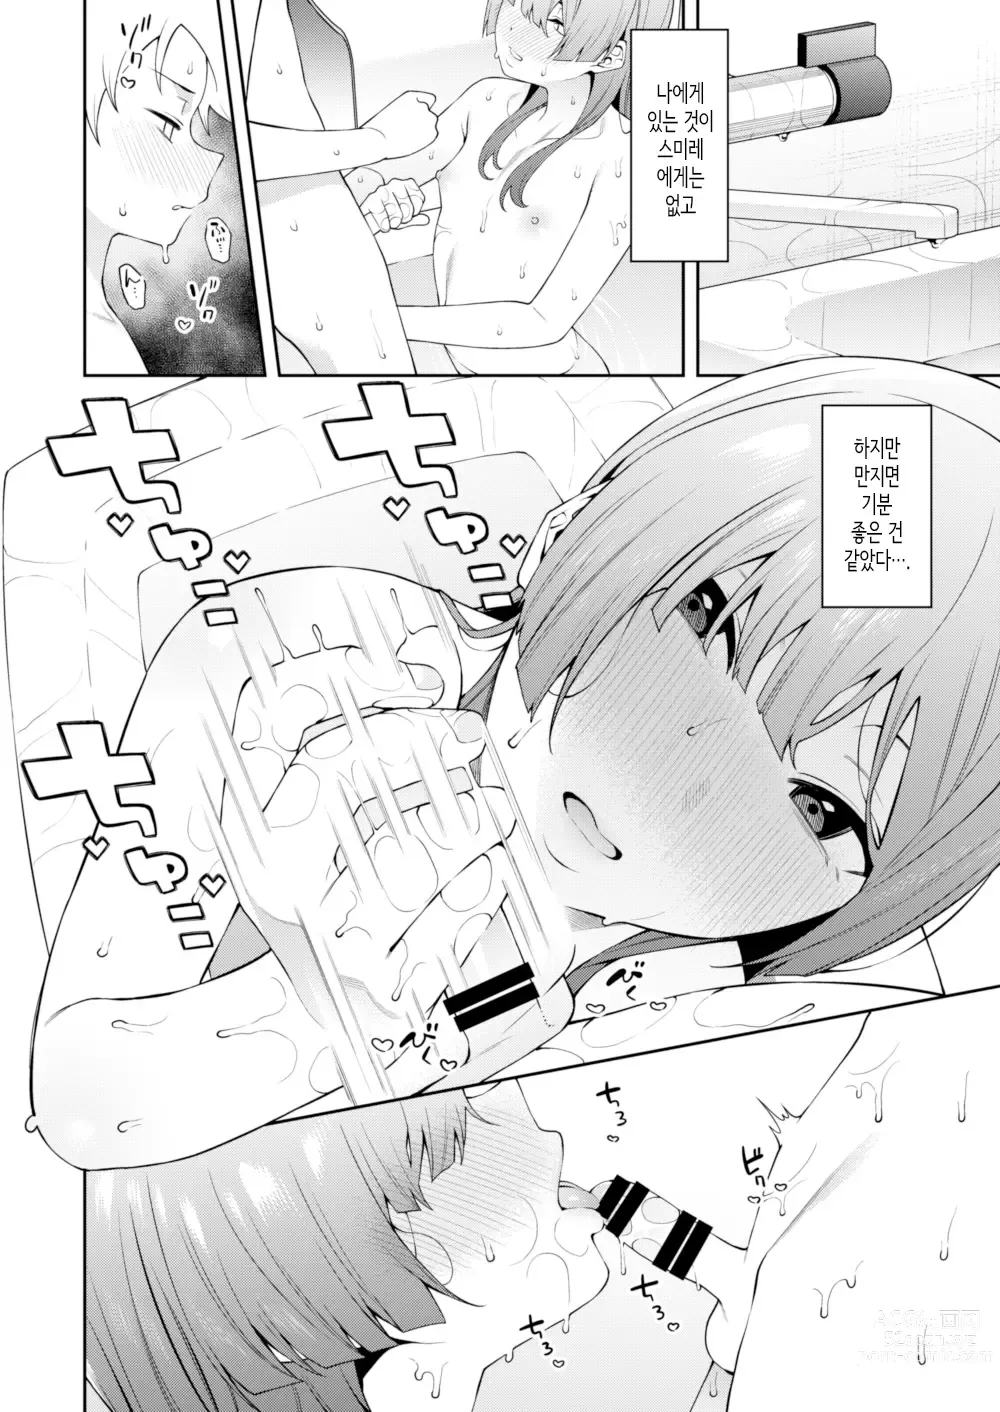 Page 7 of doujinshi 스미레 쨩은 머리가 좋다.